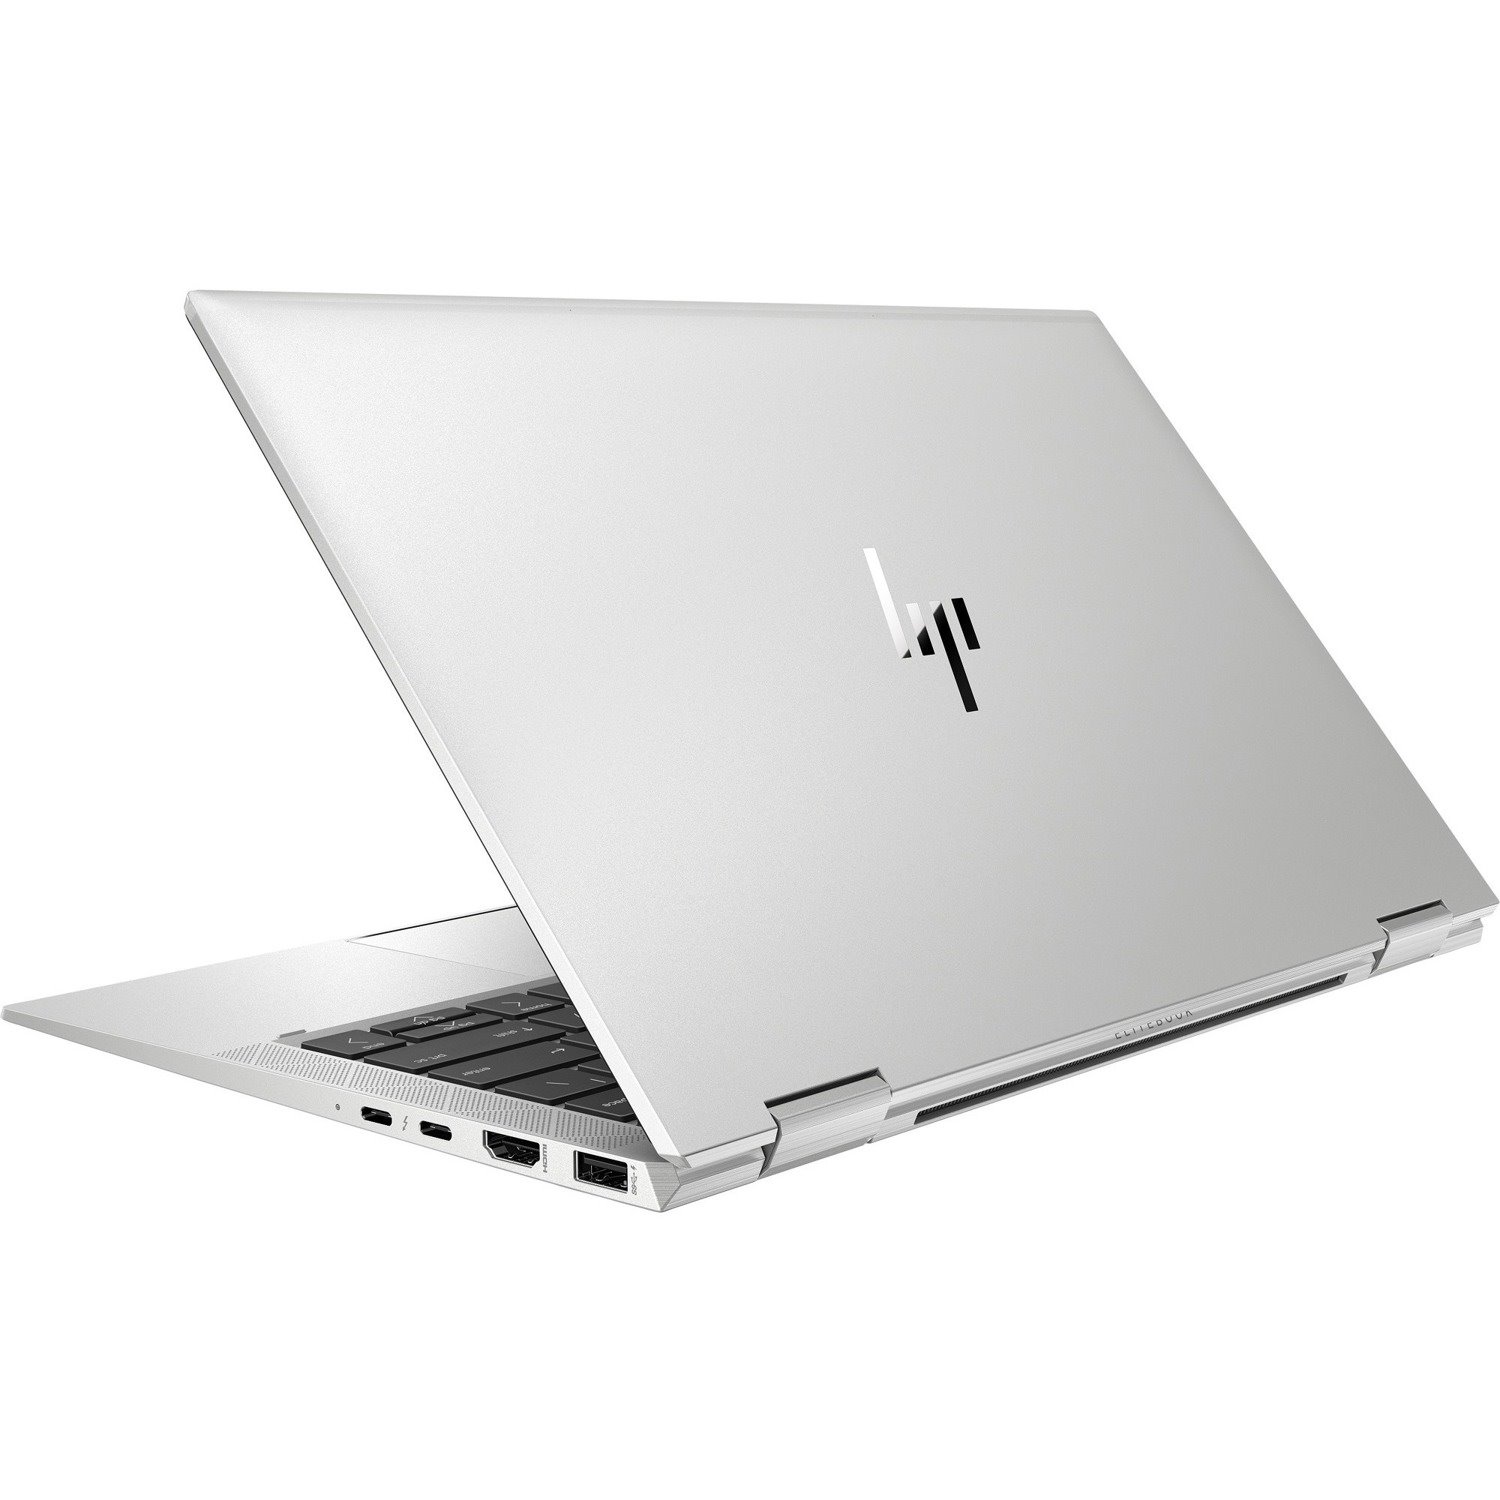 HP EliteBook x360 1030 G7 13.3" Touchscreen Convertible 2 in 1 Notebook - Intel Core i7 10th Gen i7-10610U Quad-core (4 Core) 1.80 GHz - 16 GB Total RAM - 256 GB SSD